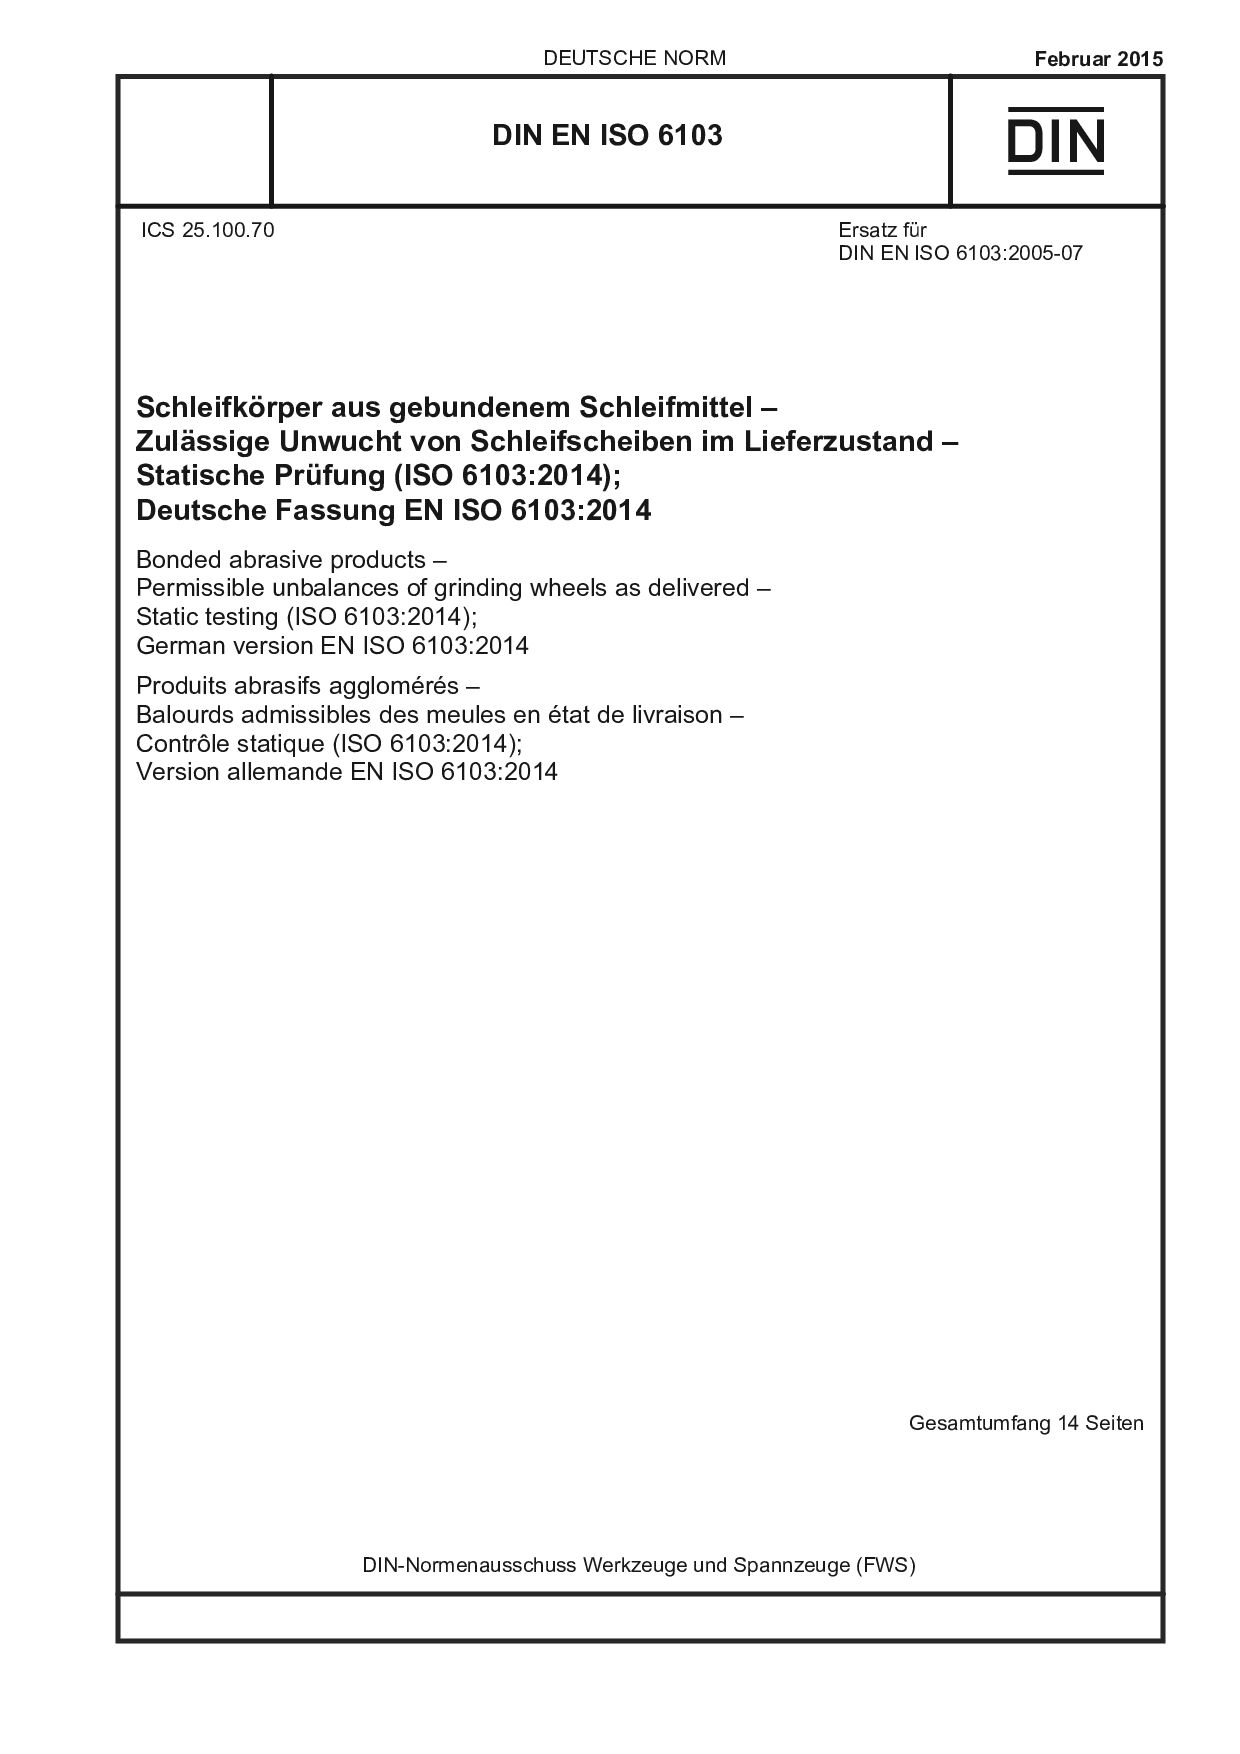 DIN EN ISO 6103:2015封面图